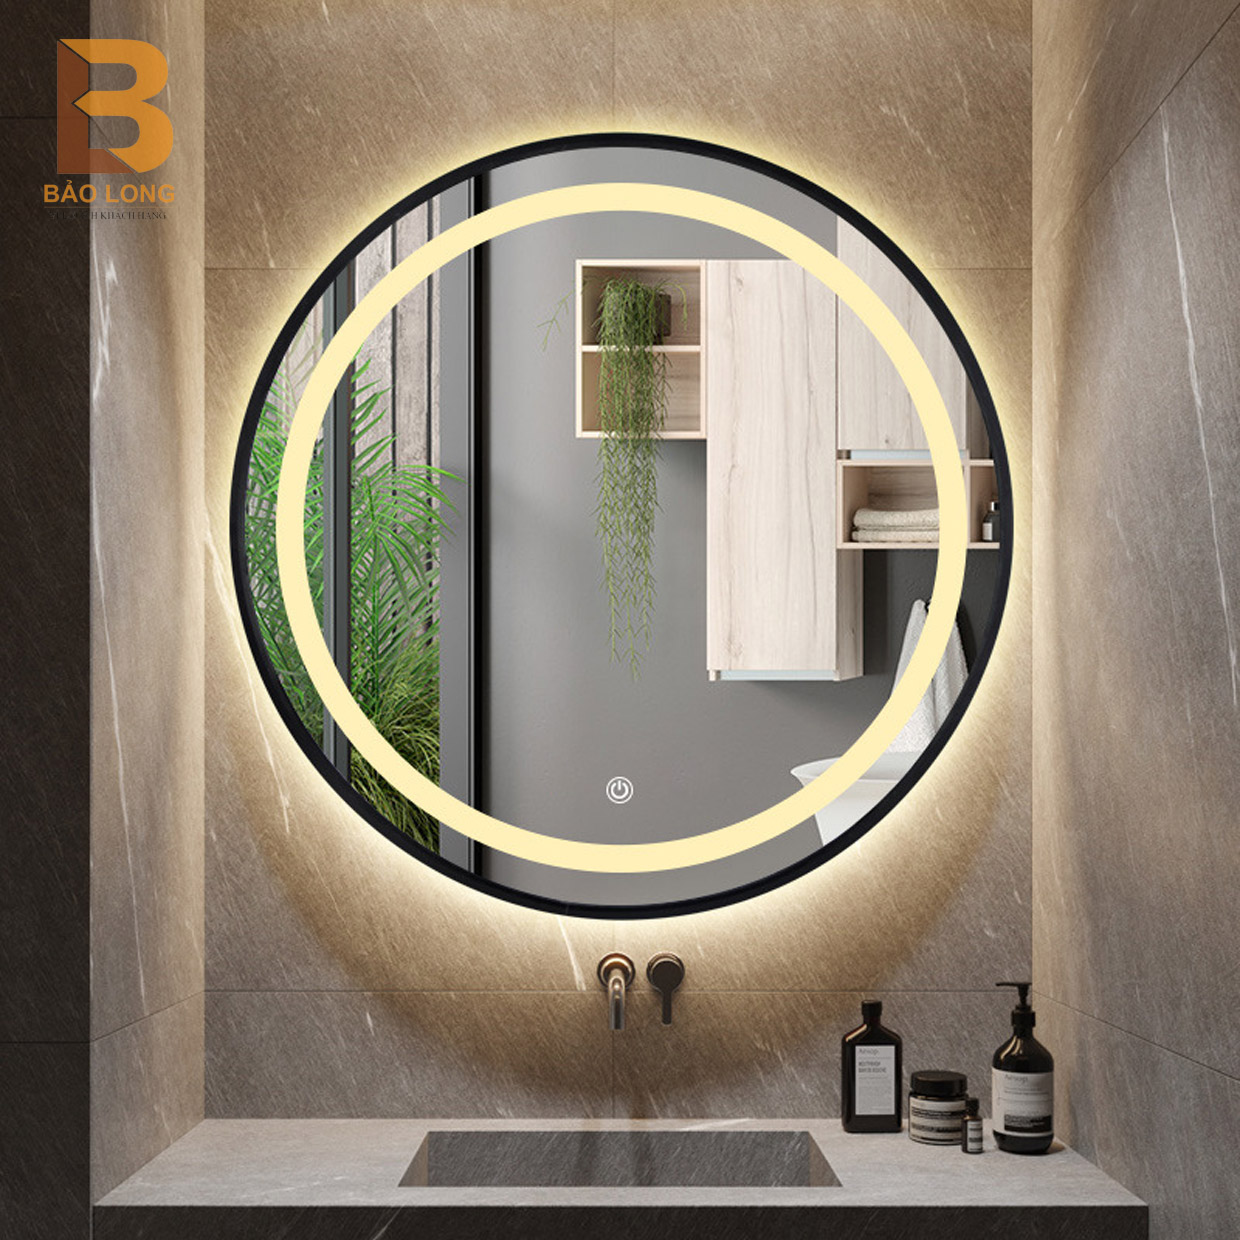 Gương nhà tắm cao cấp Bảo Long, gương tròn treo tường có đèn led đường kính từ 30-80cm